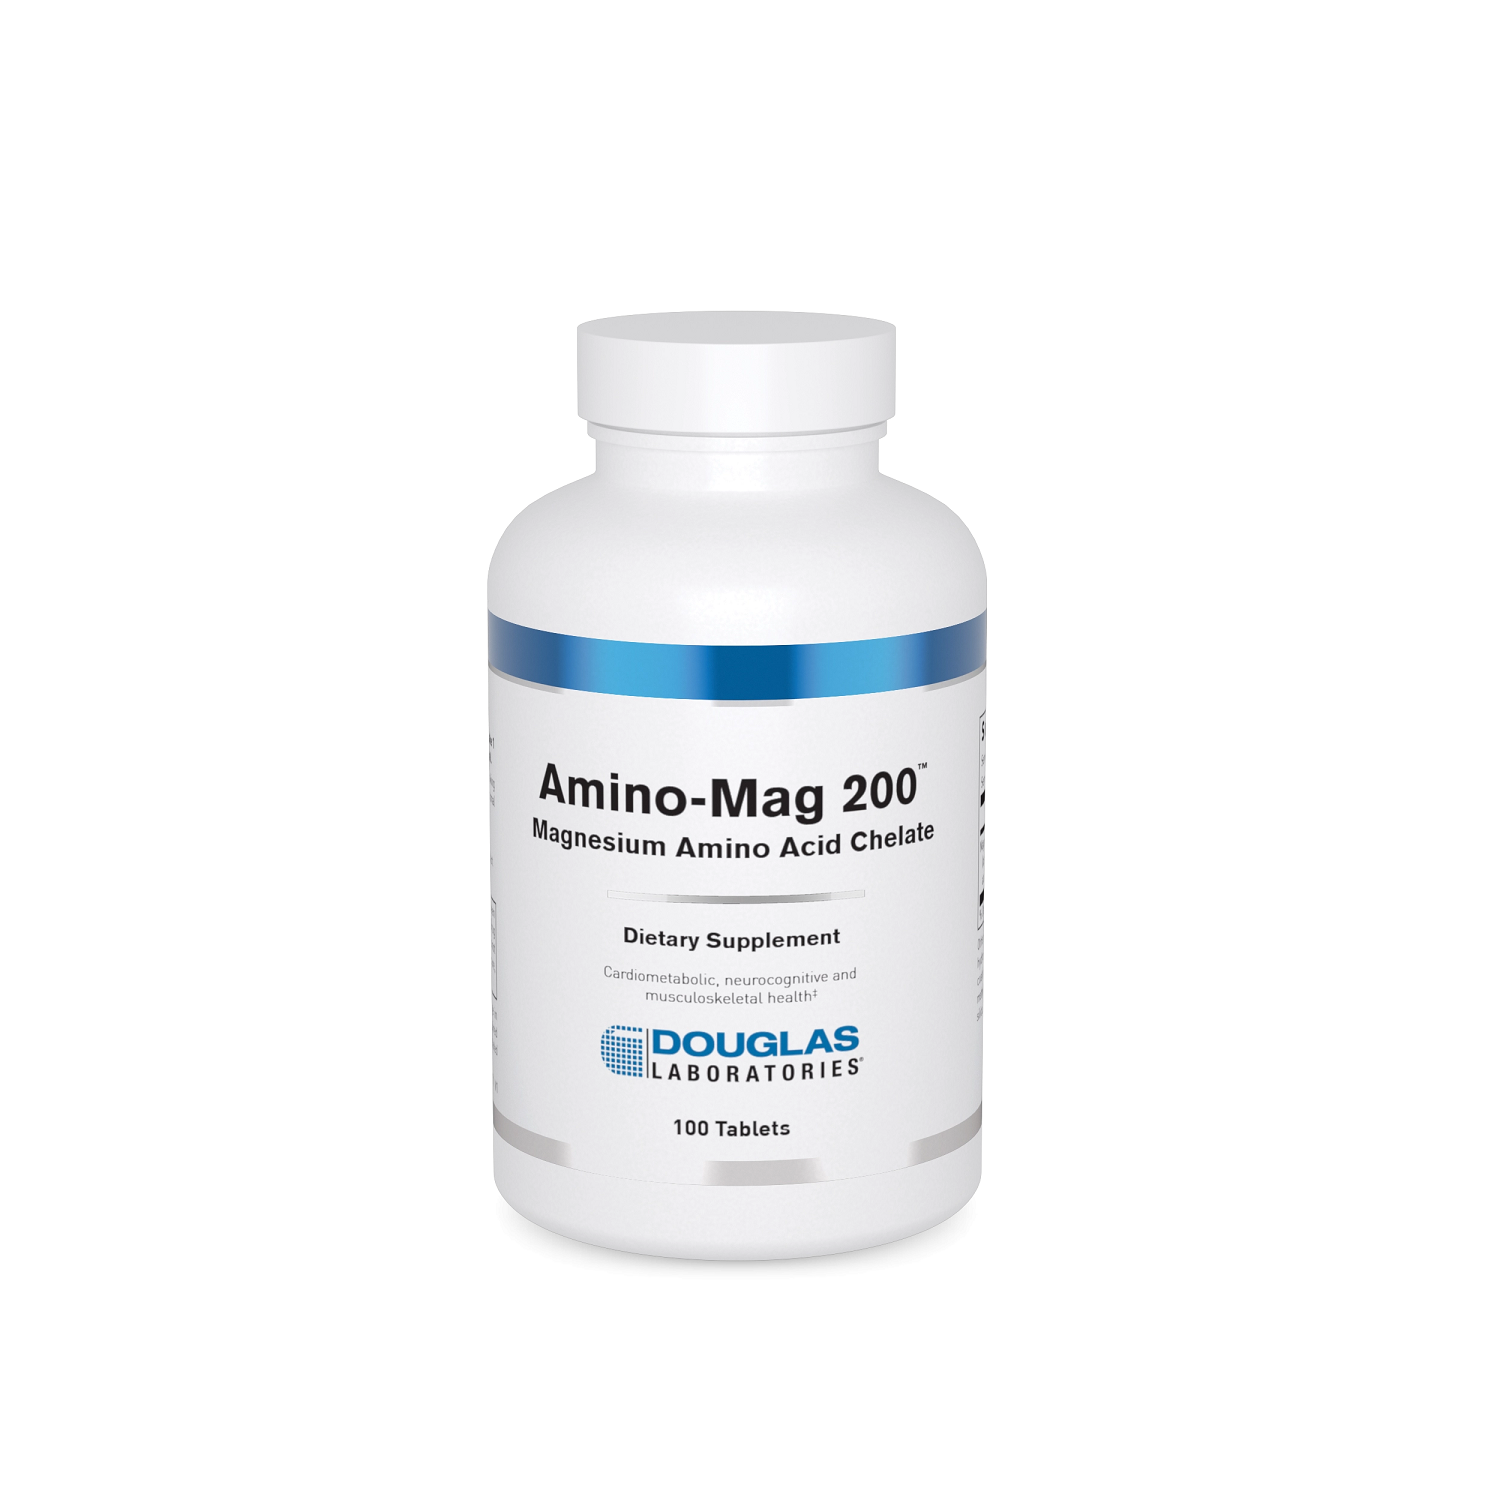 Amino-Mag 200 